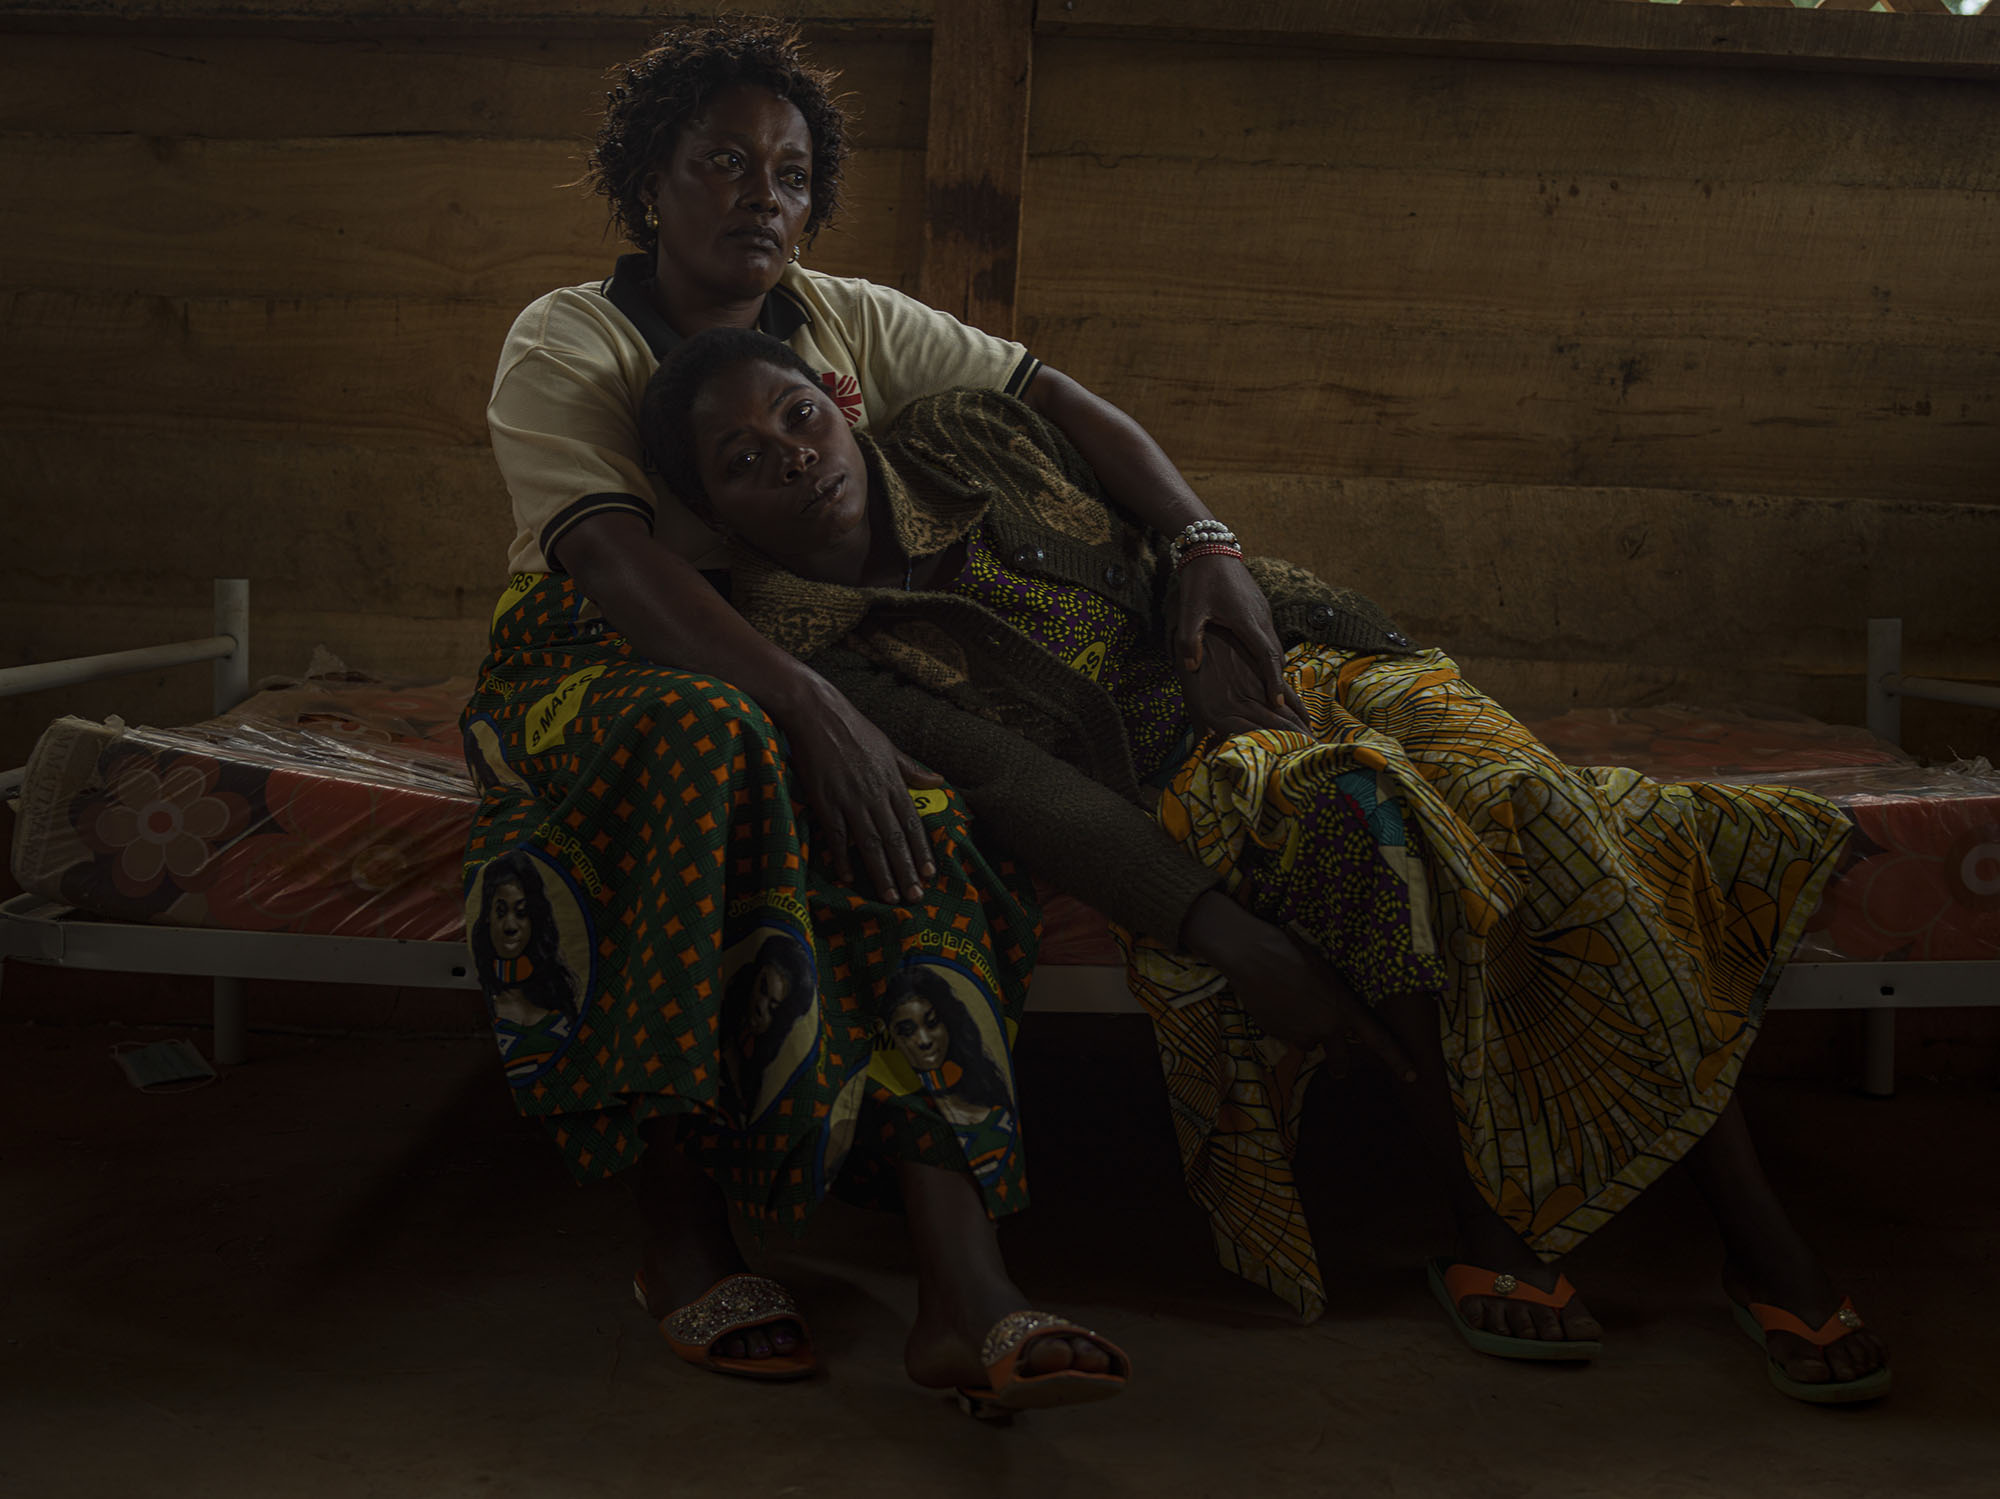 Nzale, 30 Jahre alt, auf dem Schoss von Honorine, 48 Jahre alt. Honorine ist Pflegerin, die bei Vergewaltigungsopfern die Erstversorgung und psychologische Unterstützung leistet. 